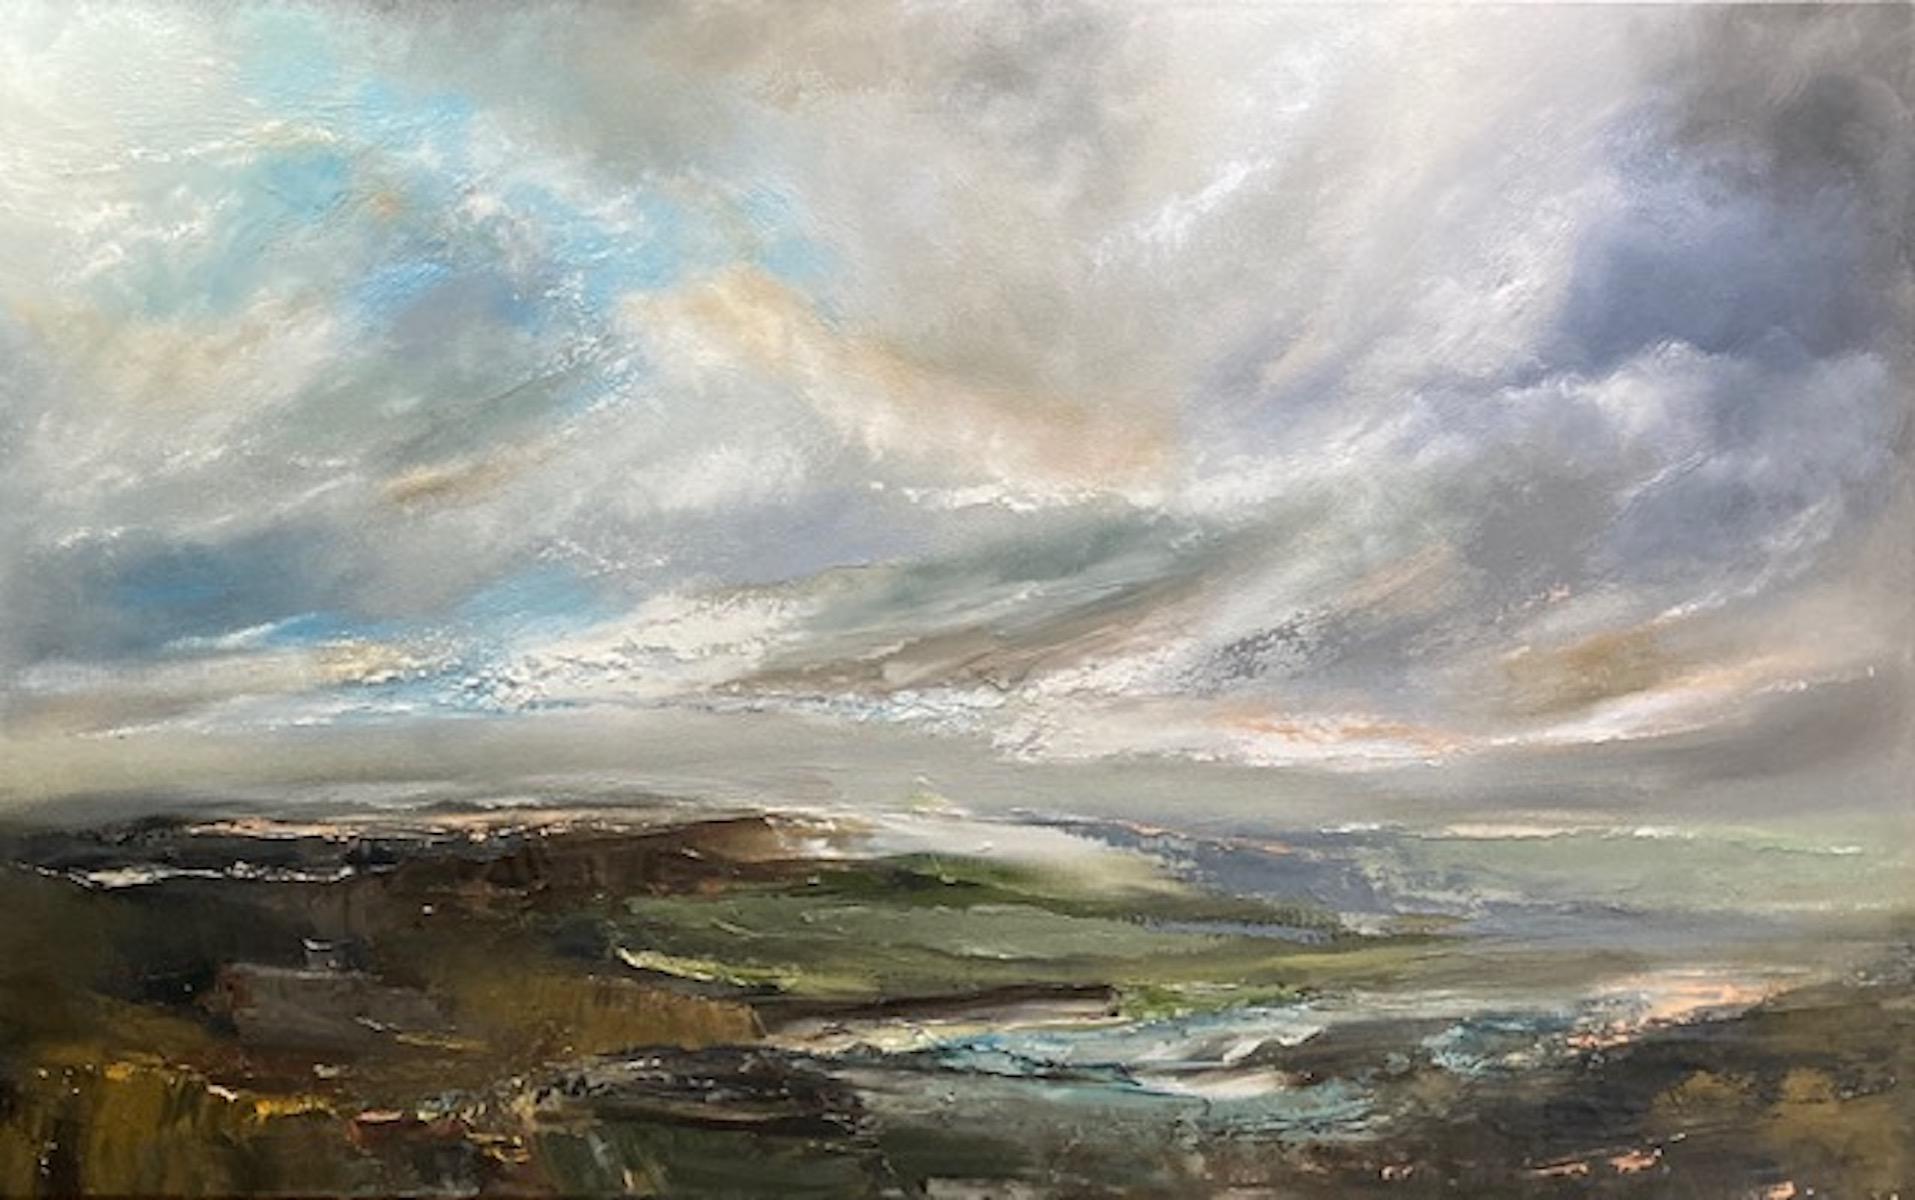 Landscape Painting Helen Howells - Song de la vallée, peinture de paysage gallois, art expressionniste, vert et bleu